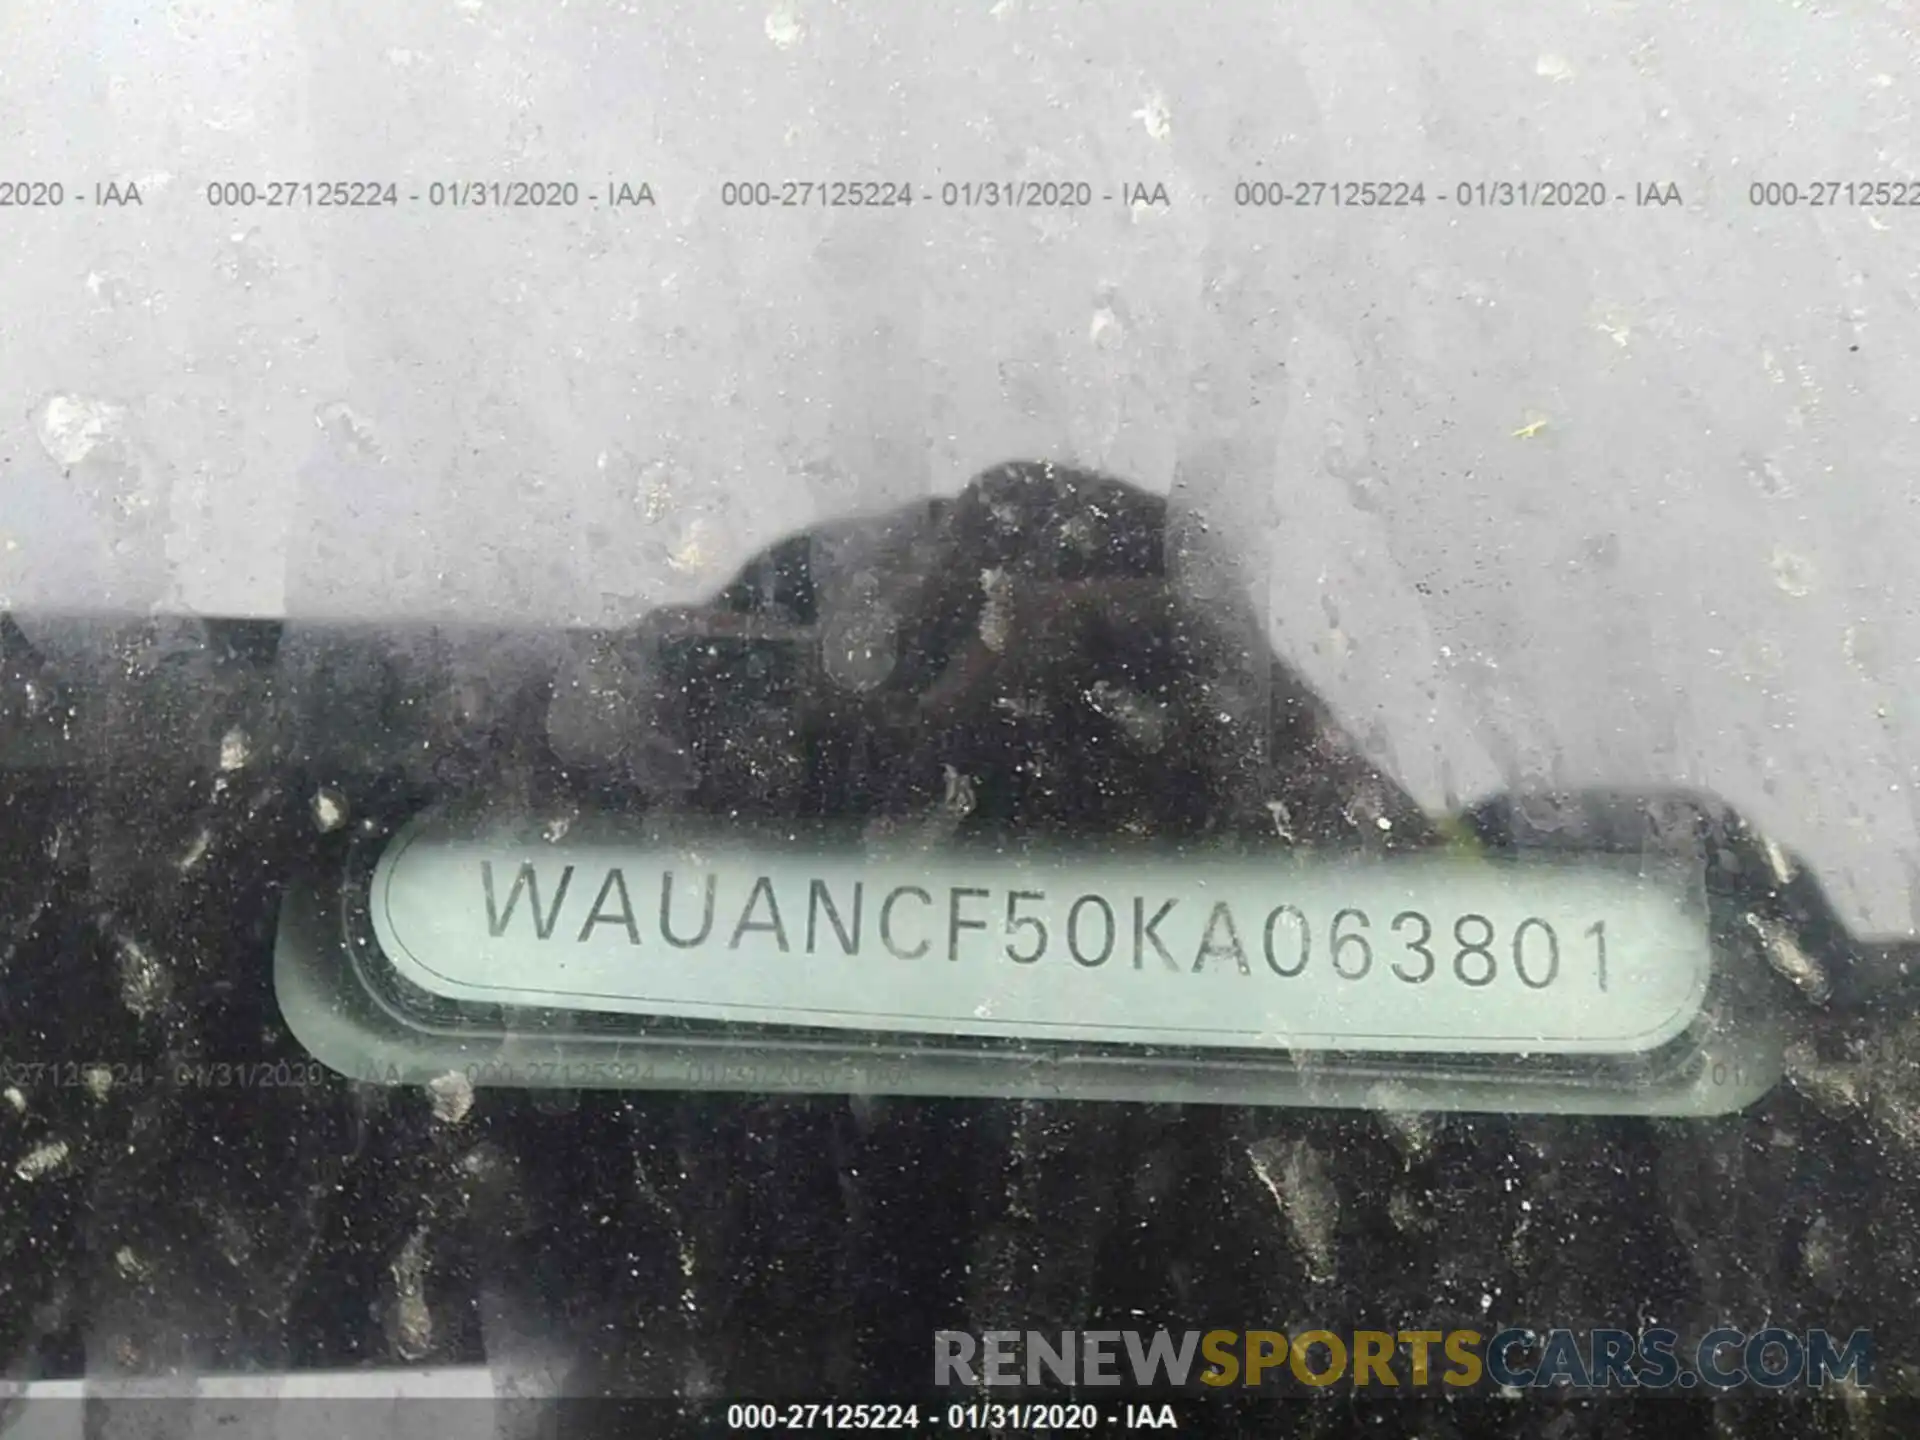 9 Photograph of a damaged car WAUANCF50KA063801 AUDI A5 2019